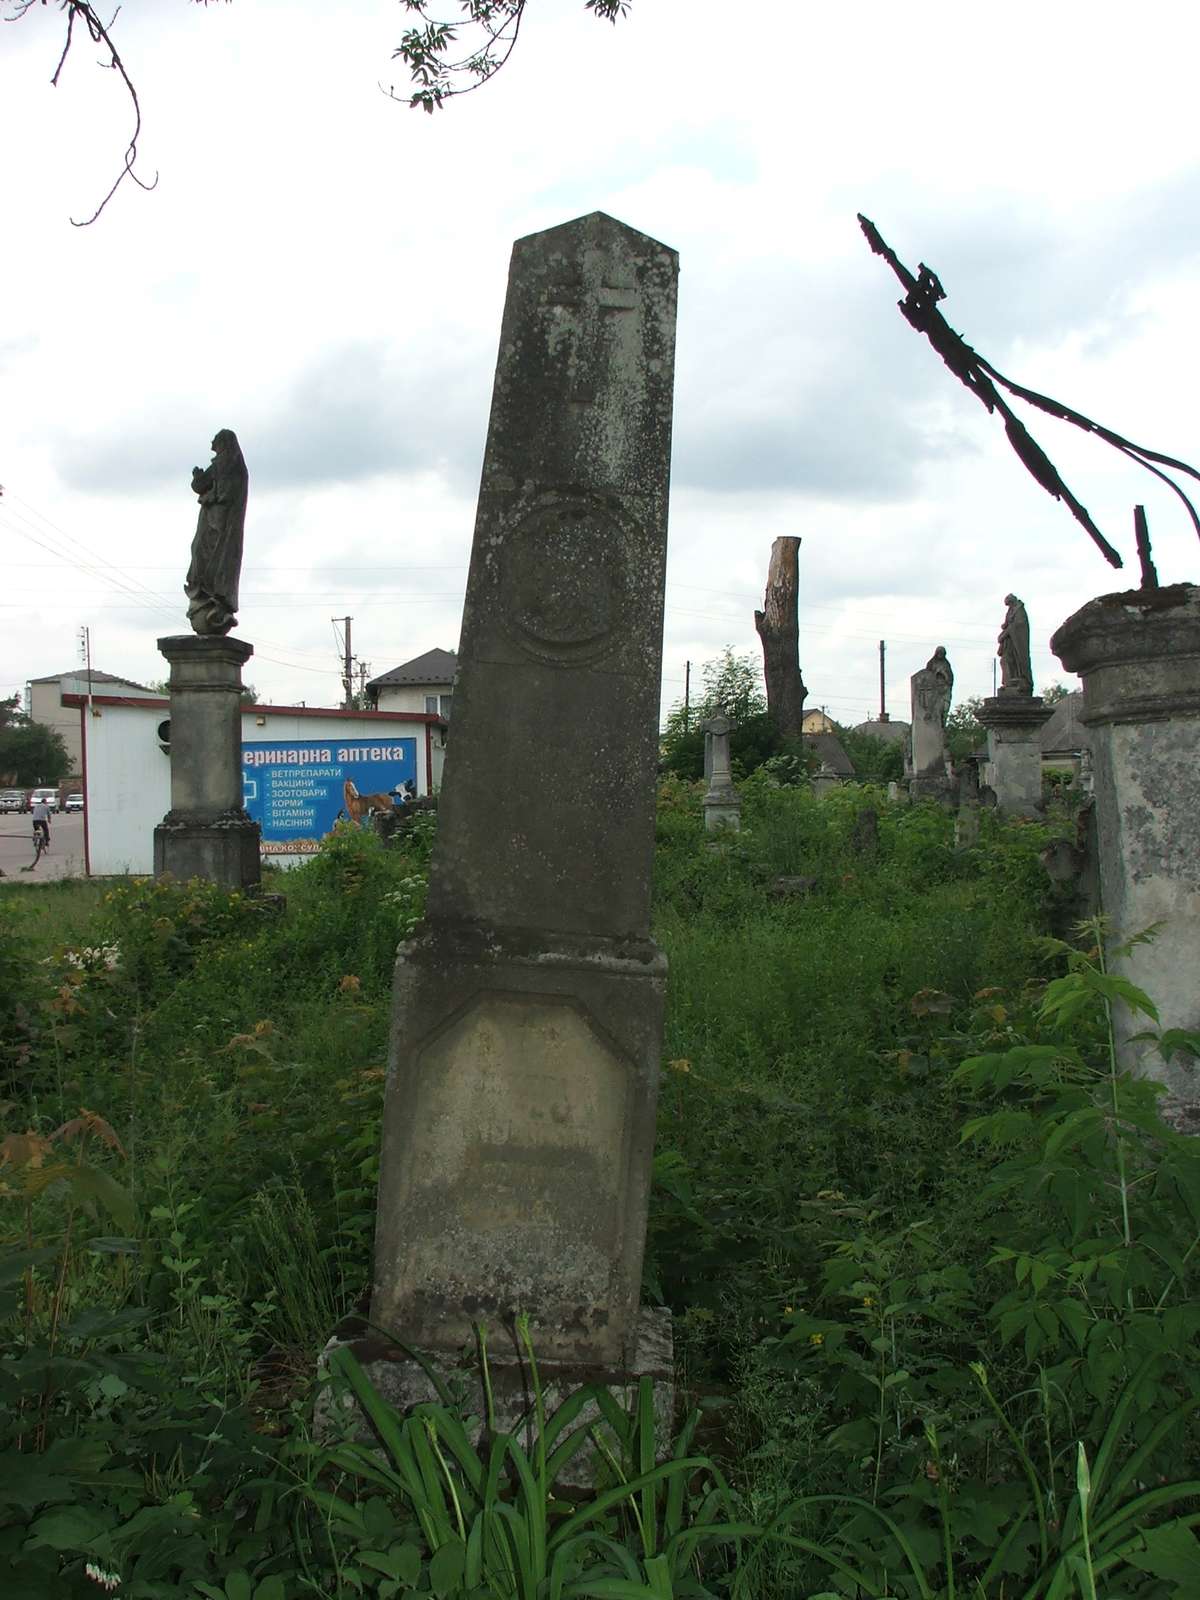 Tombstone of Józefa Zajączkowska, Zbaraż cemetery, sector 01b